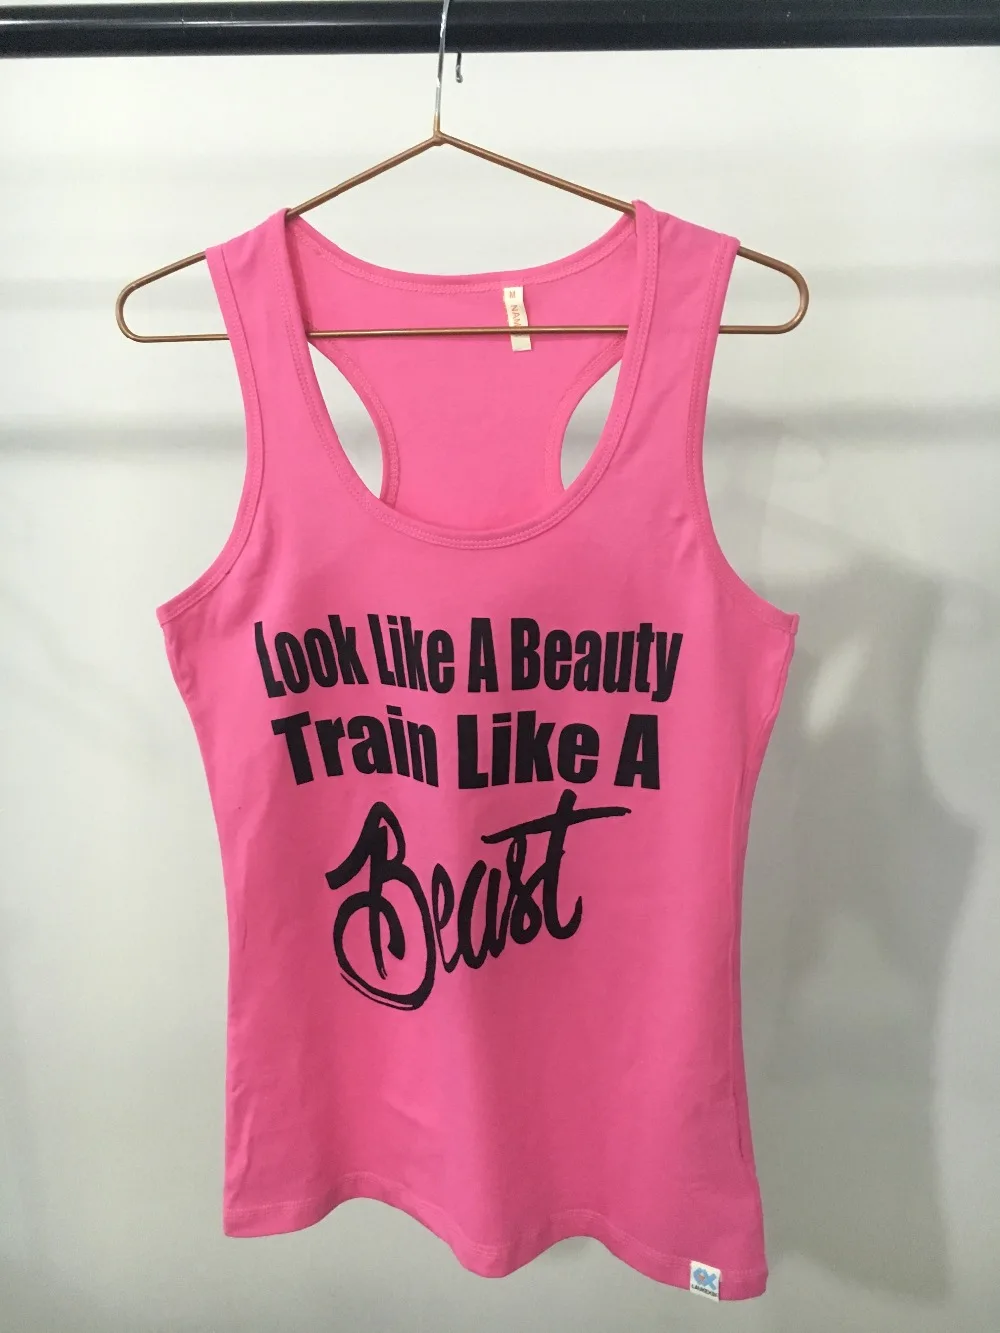 Поезд как зверь бак топ, футболка, рубашка Femme упражнения Фитнес выработать леди женская спортивная подходит Женская одежда